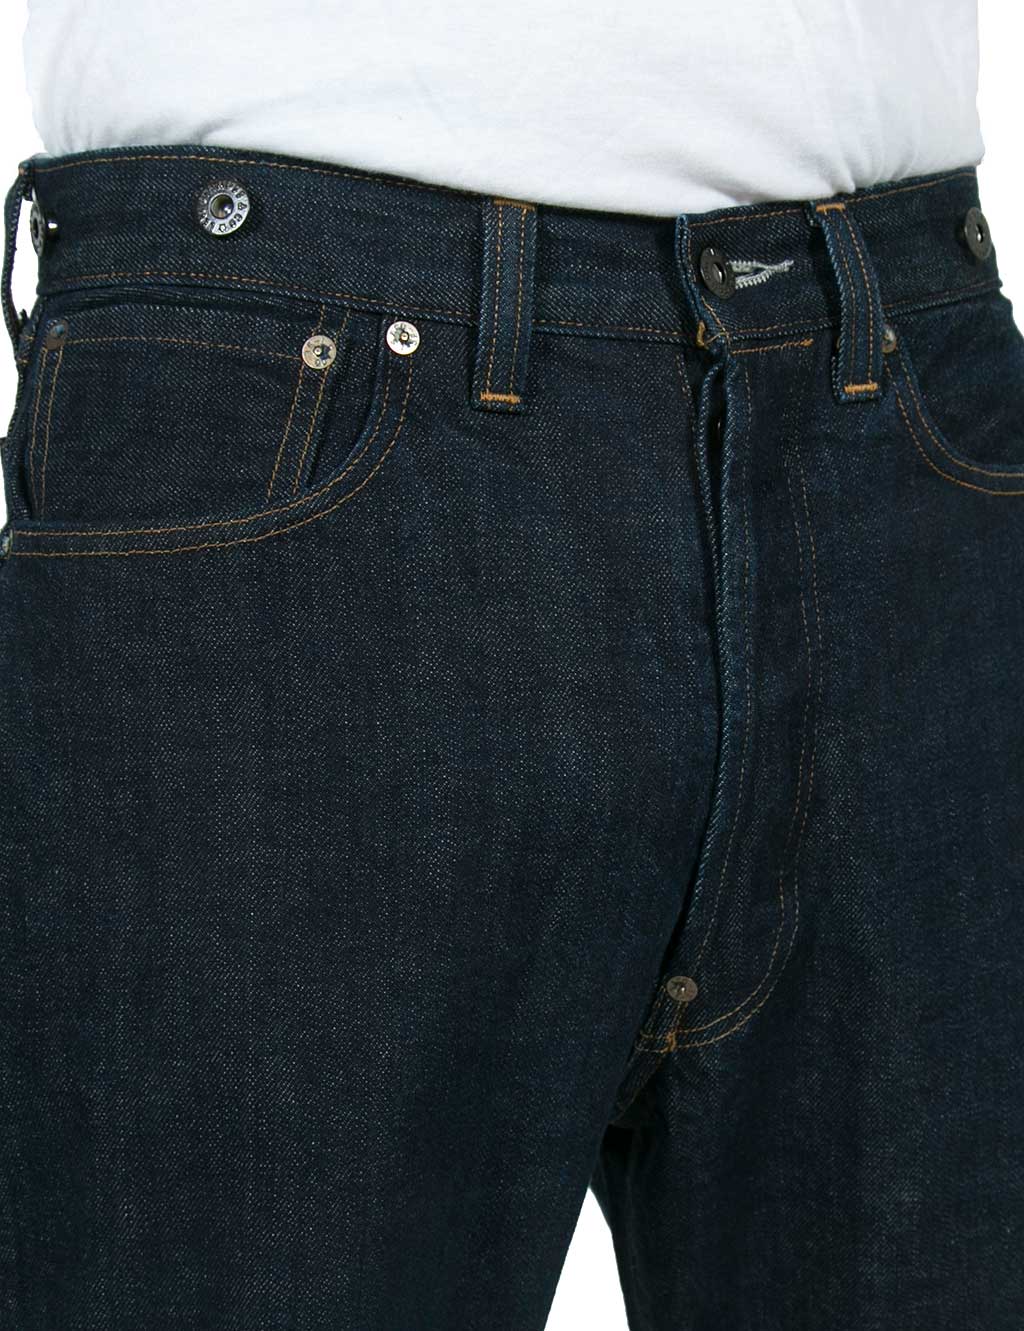 levis 201 jeans